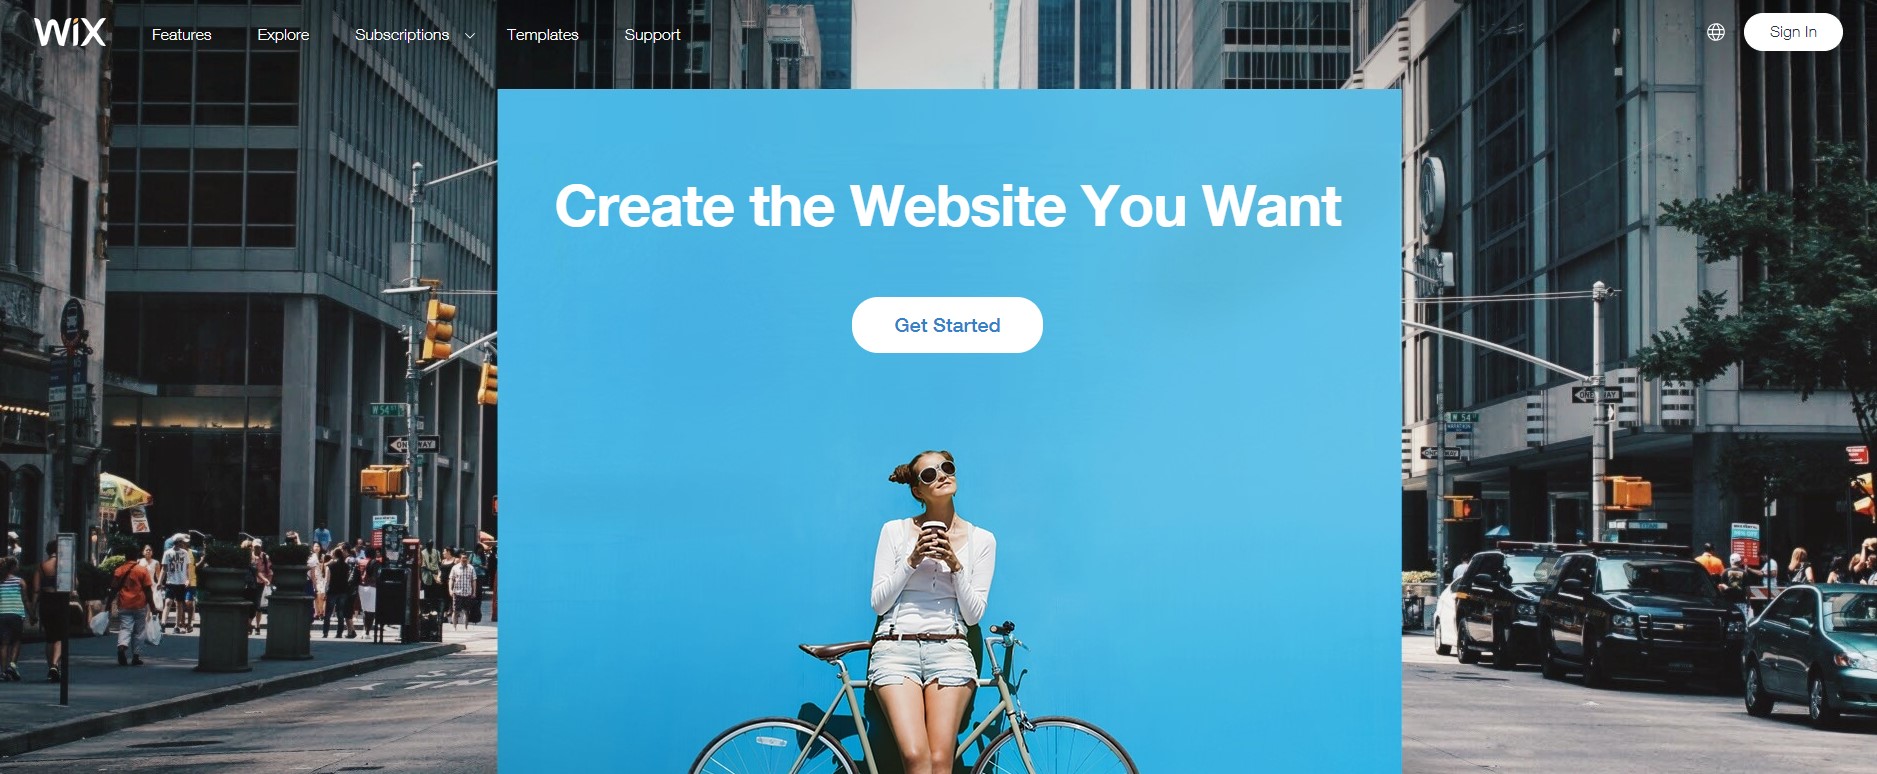 serviço de ciração de websites visualmente wix